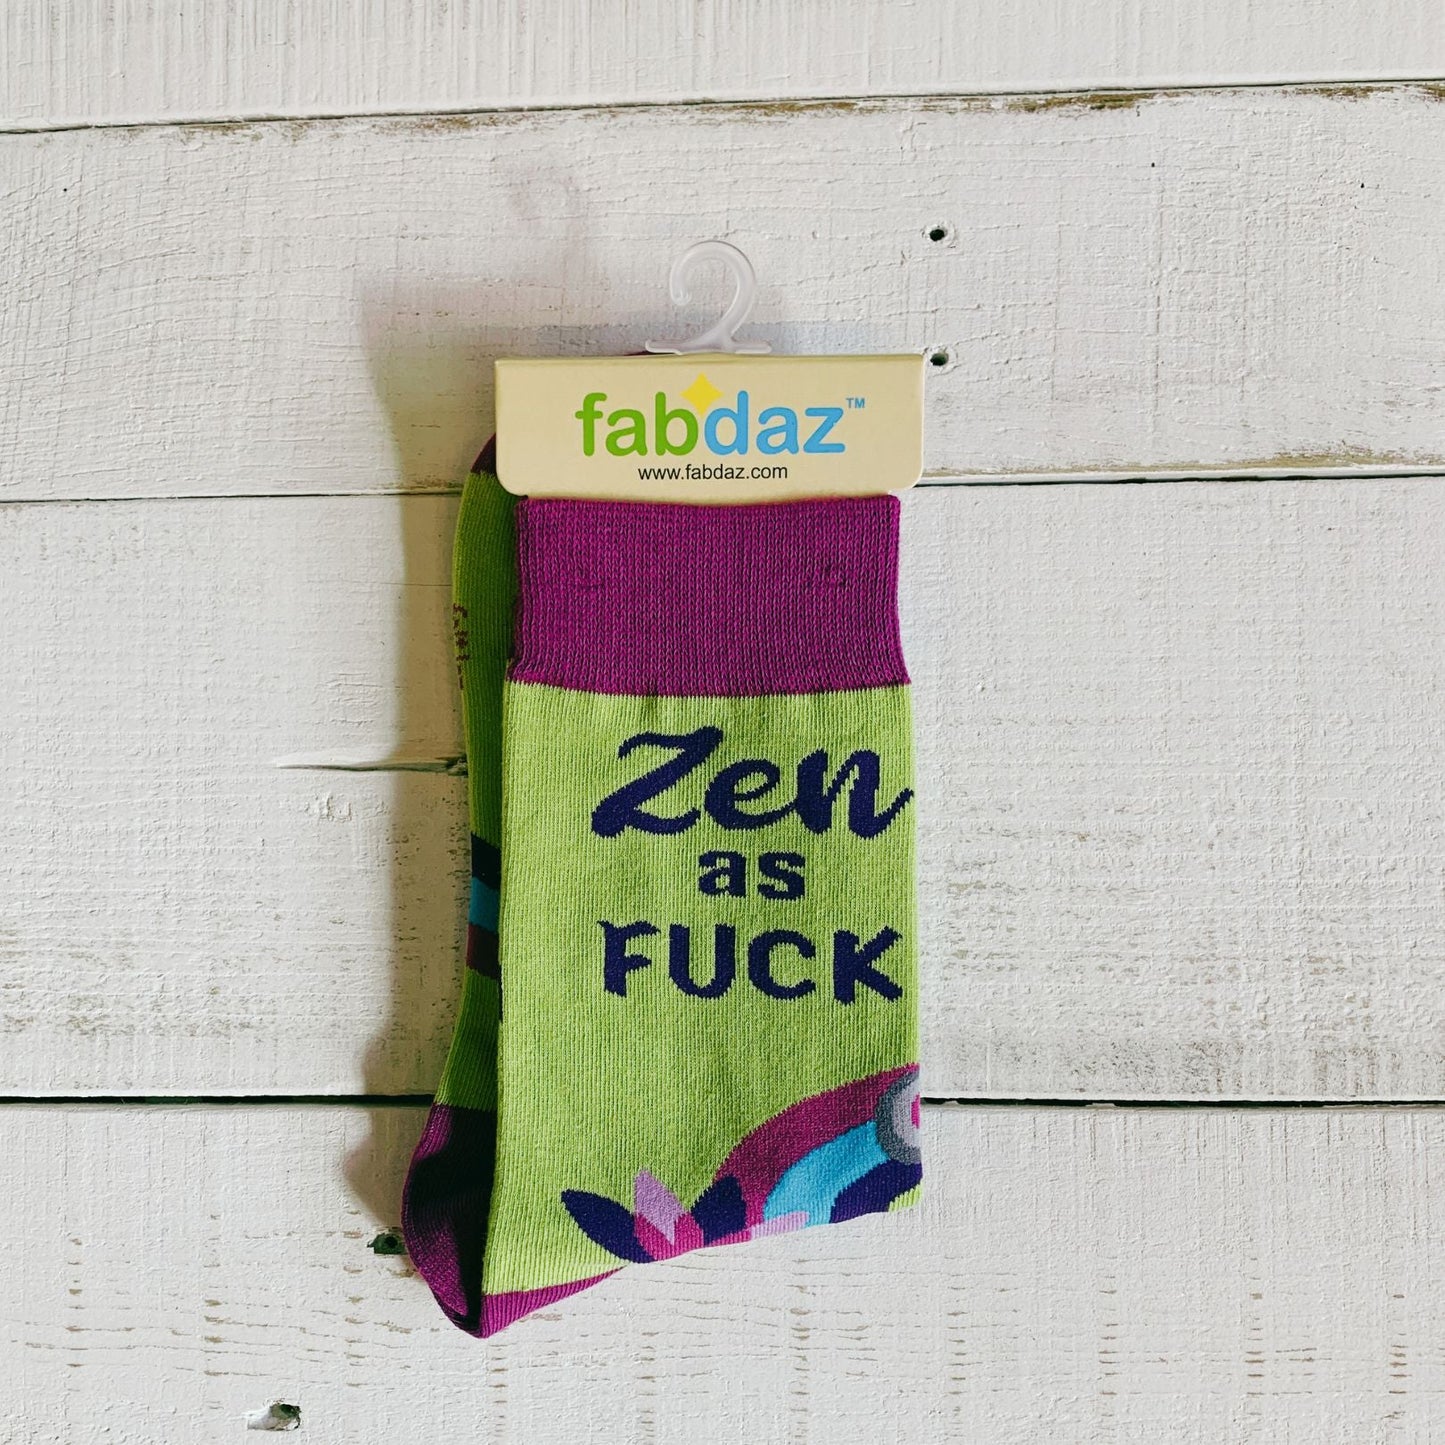 Zen as F**k Women's Crew Socks | Retro Novelty Socks